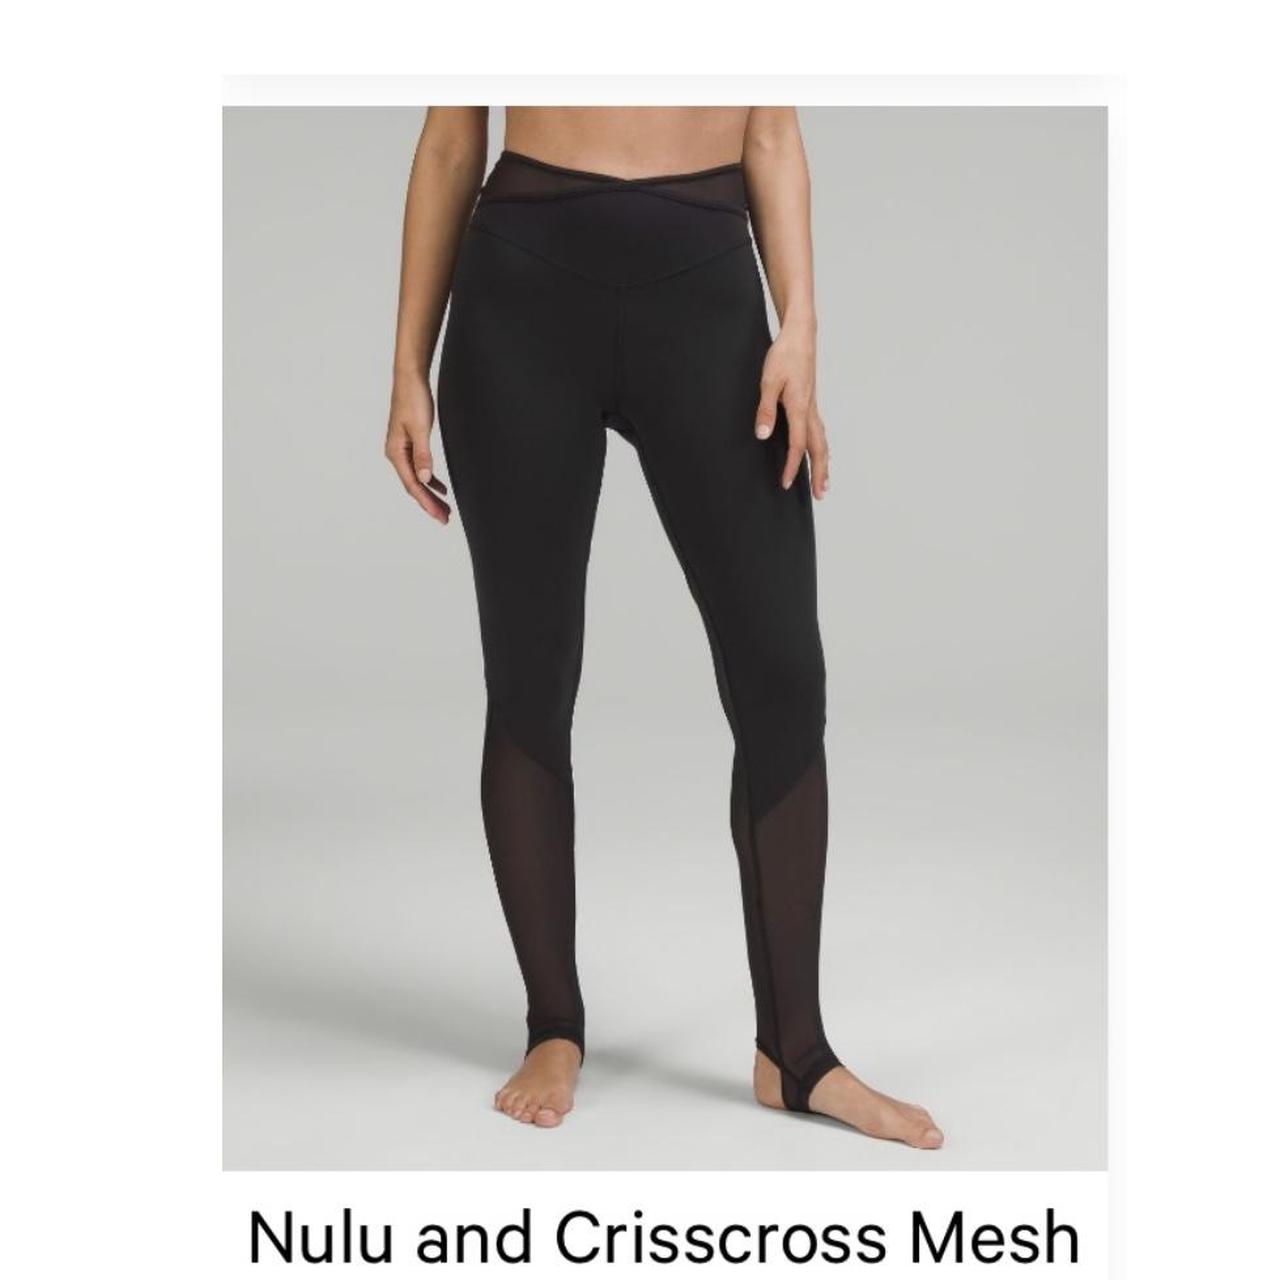 Nulu and Crisscross Mesh Stirrup Tight 🖤 Never been - Depop